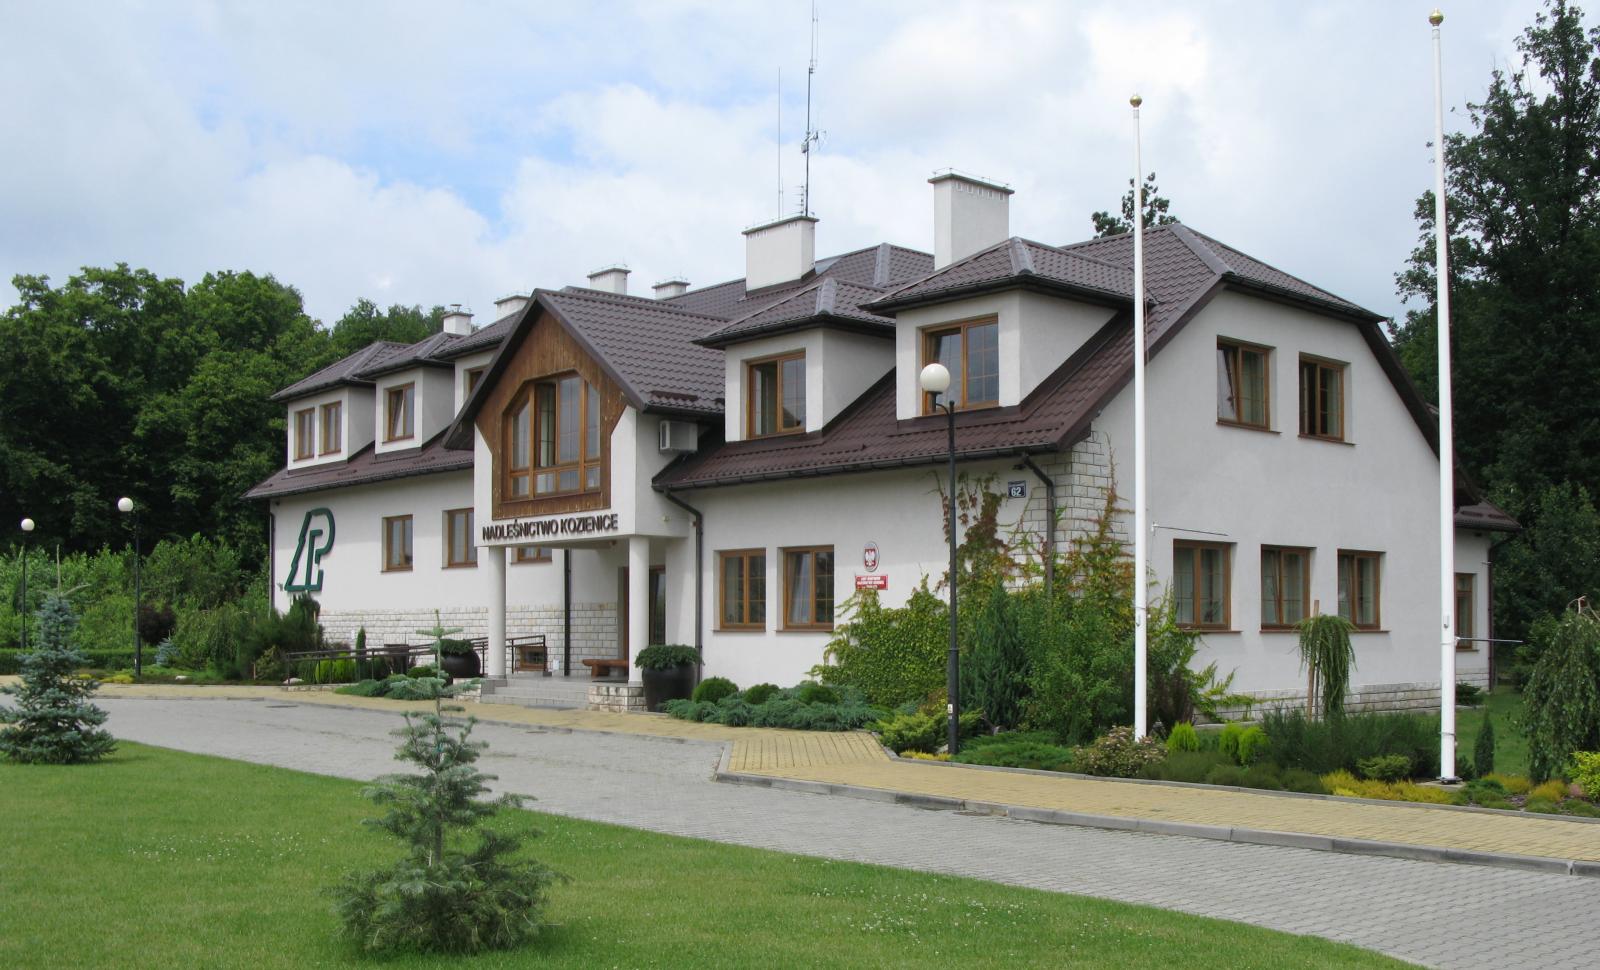 Headquarters Nadleśnictwo Kozienice